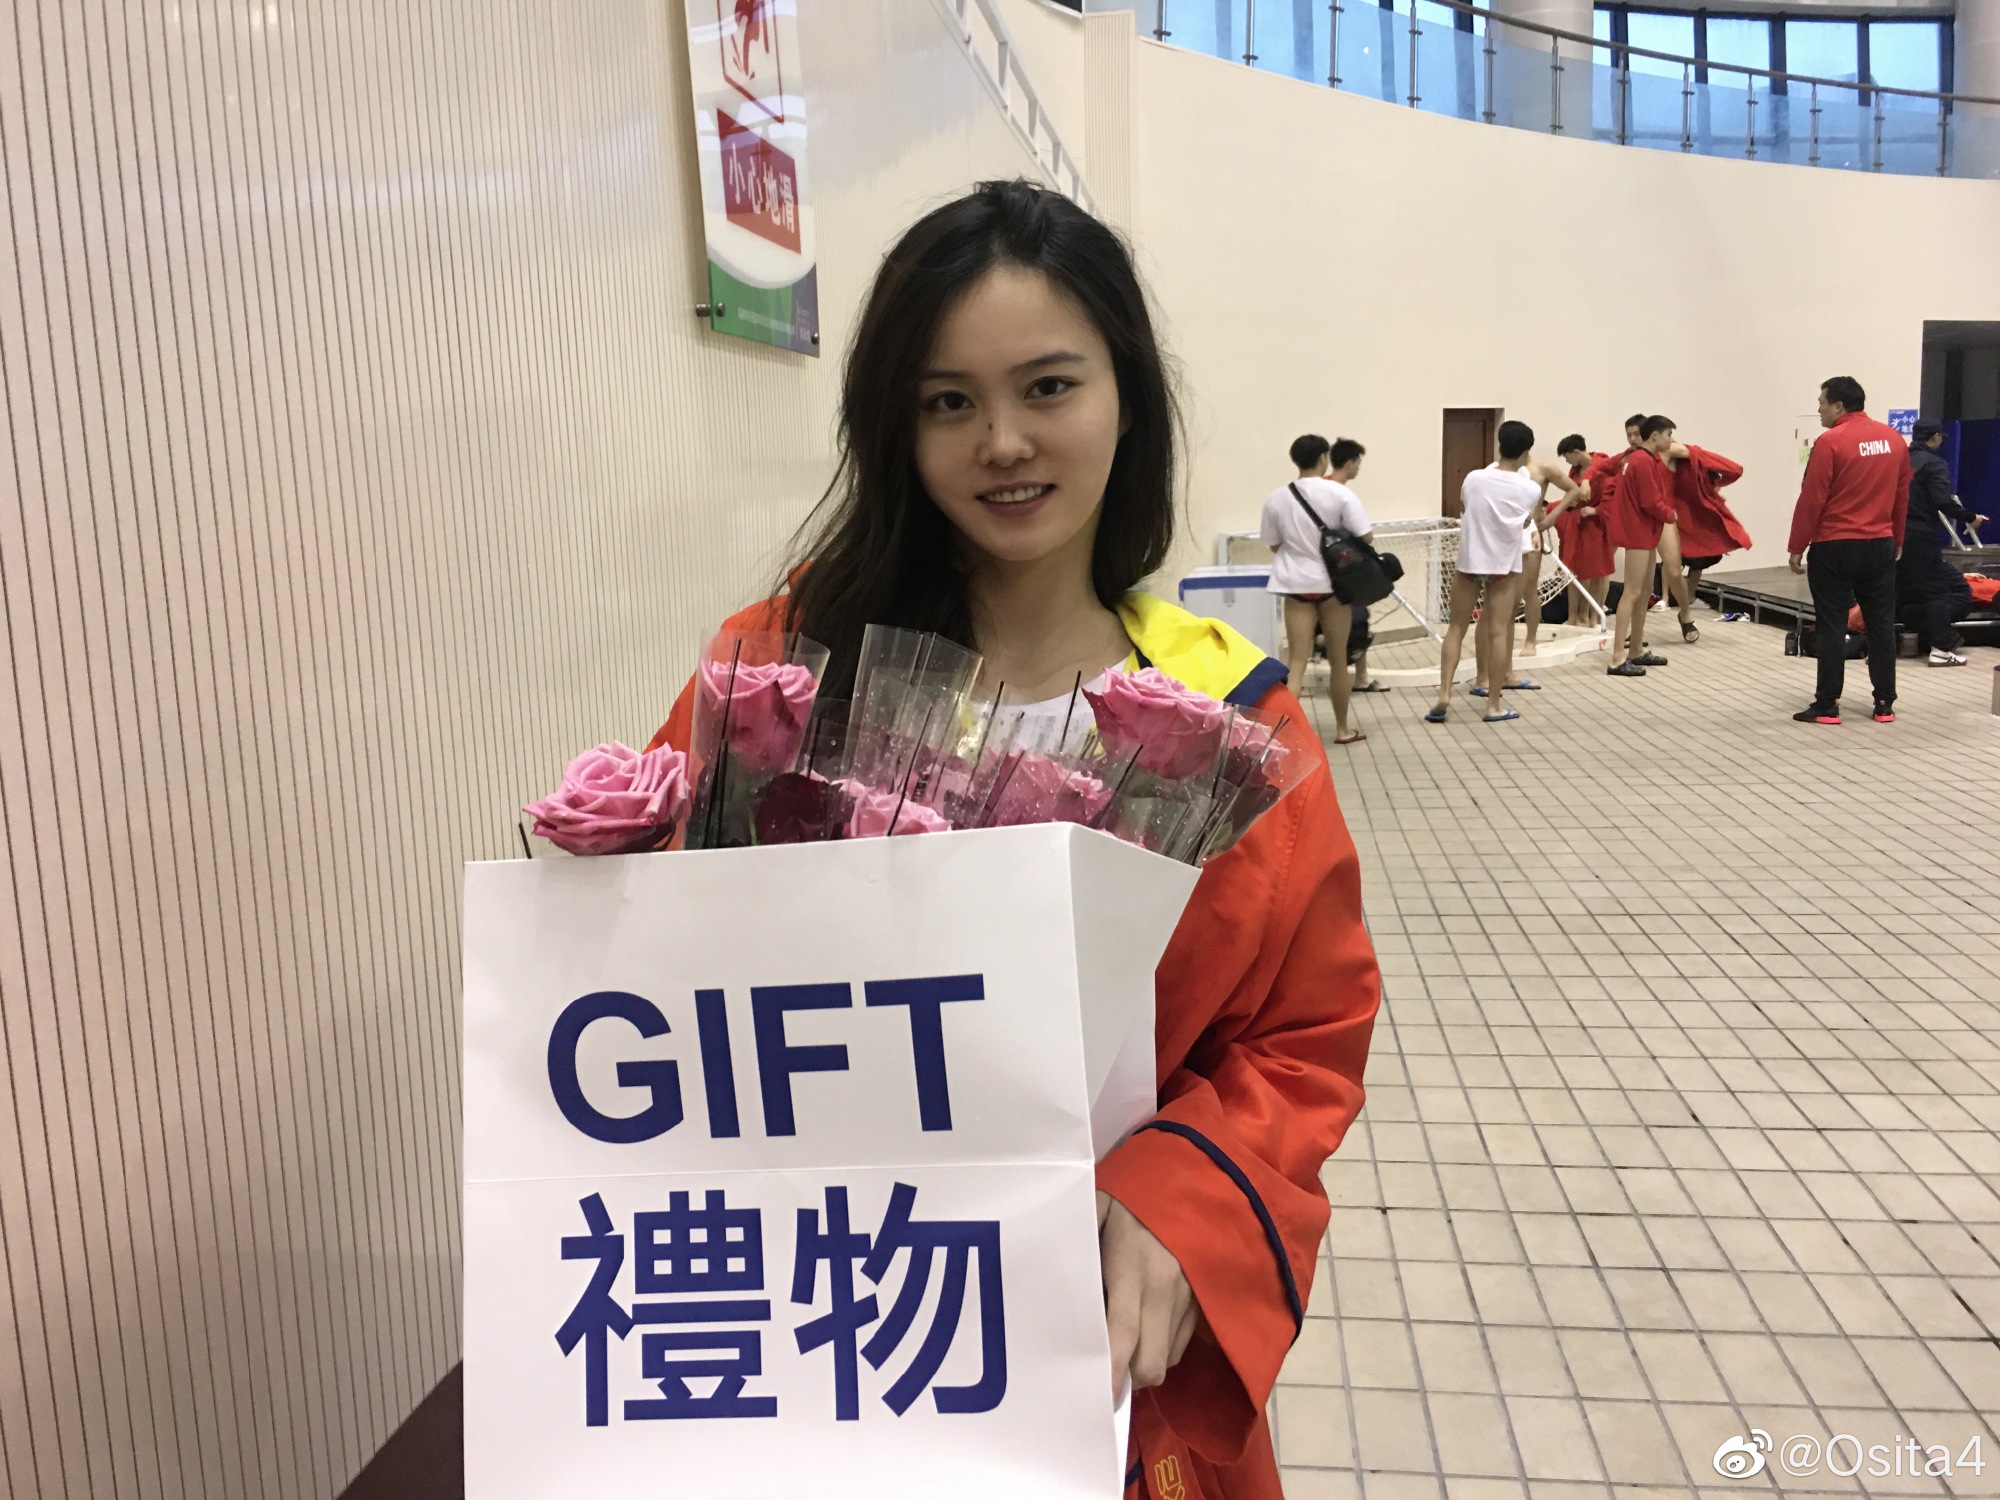 始于颜值敬于实力 中国女子水球队值得被看见